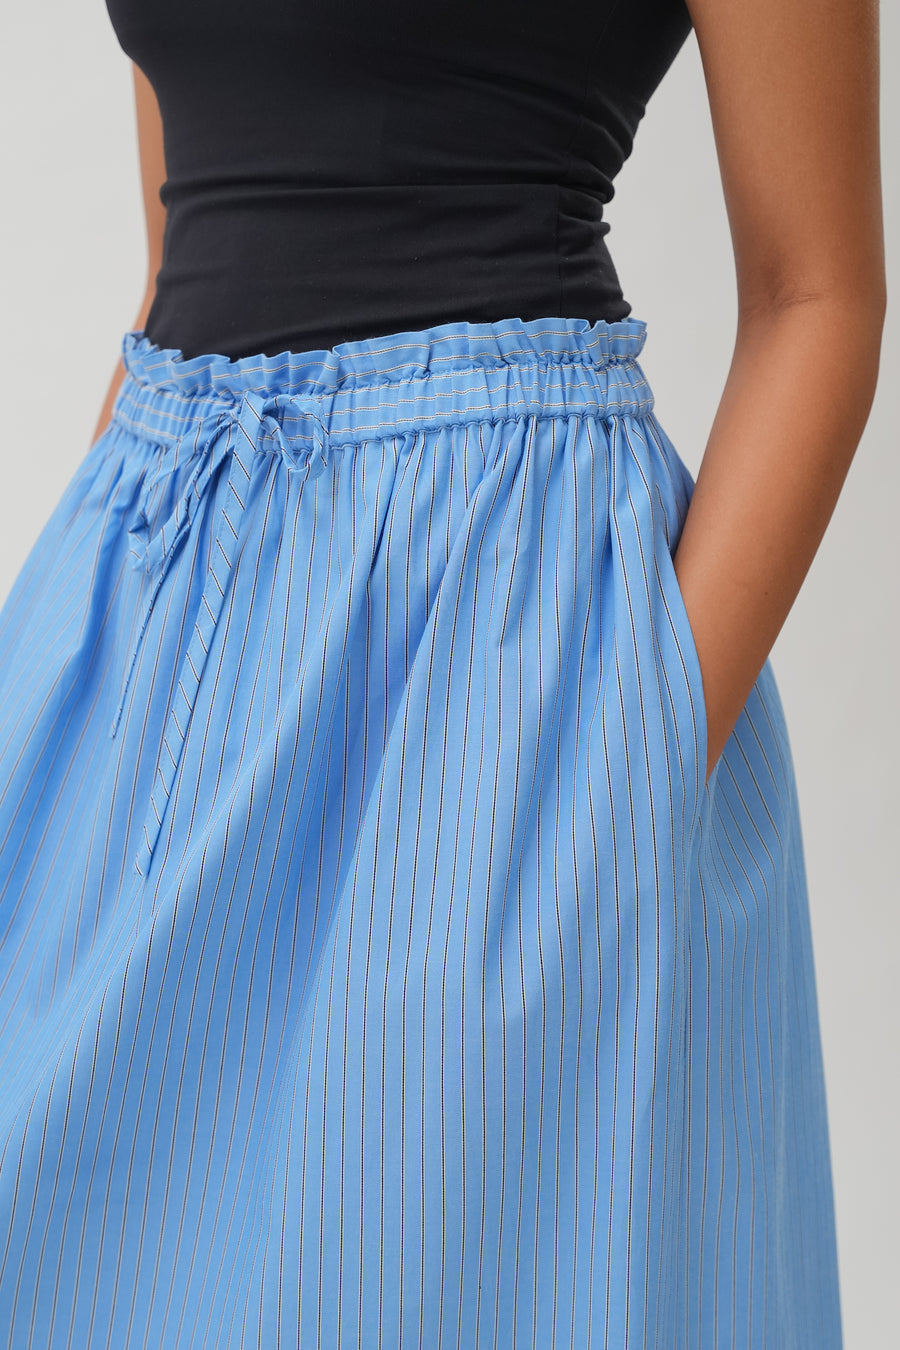 Good Time Skirt in Blue Stripe